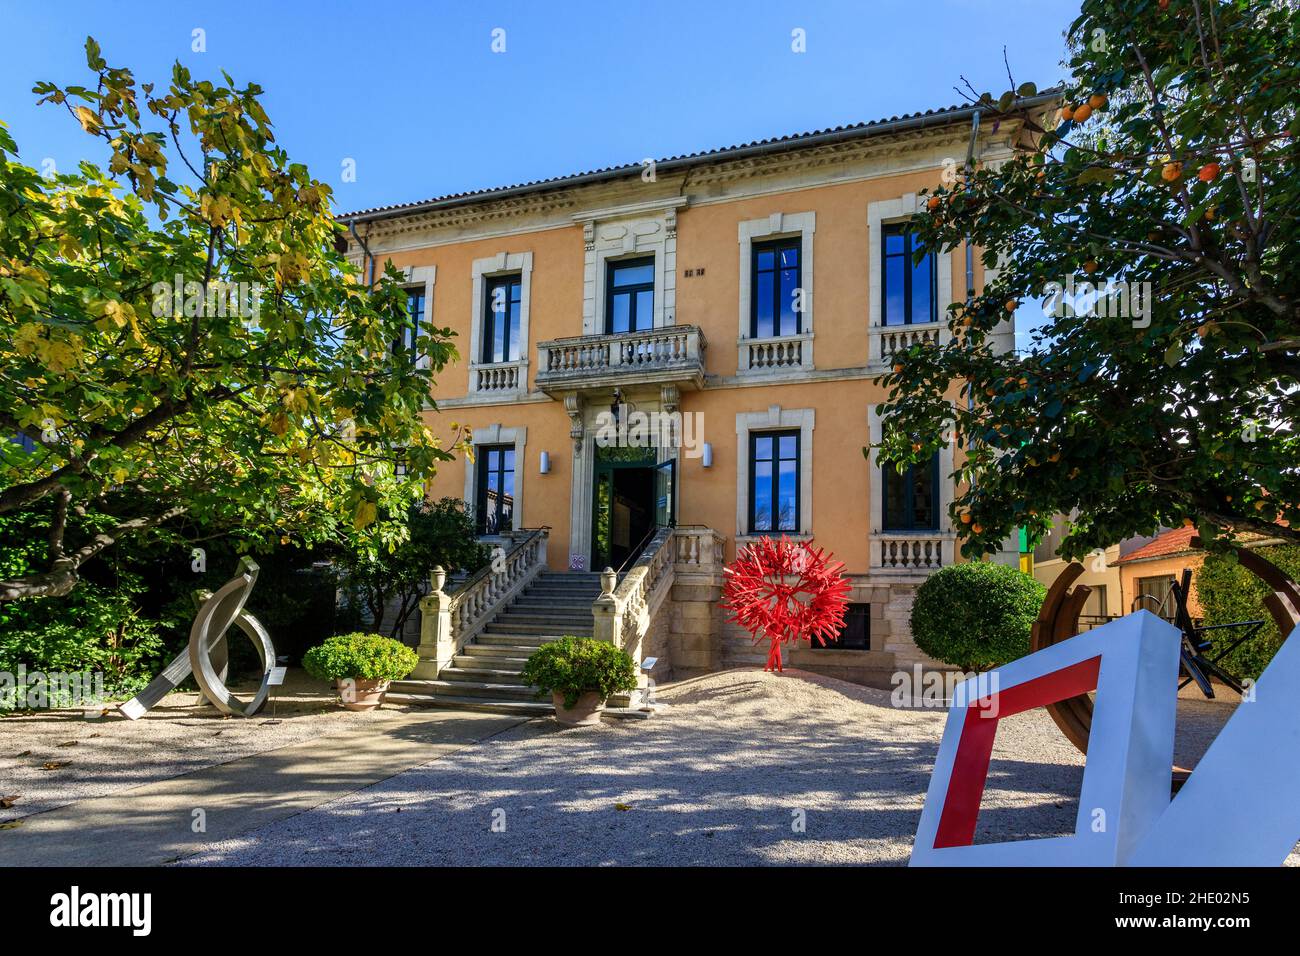 Frankreich, Vaucluse, L'Isle sur la Sorgue, Fondation Villa Datris, Museum zeitgenössische Skulpturen, Skulpturen im Garten mit auf der rechten Seite eine Arbeit von M Stockfoto